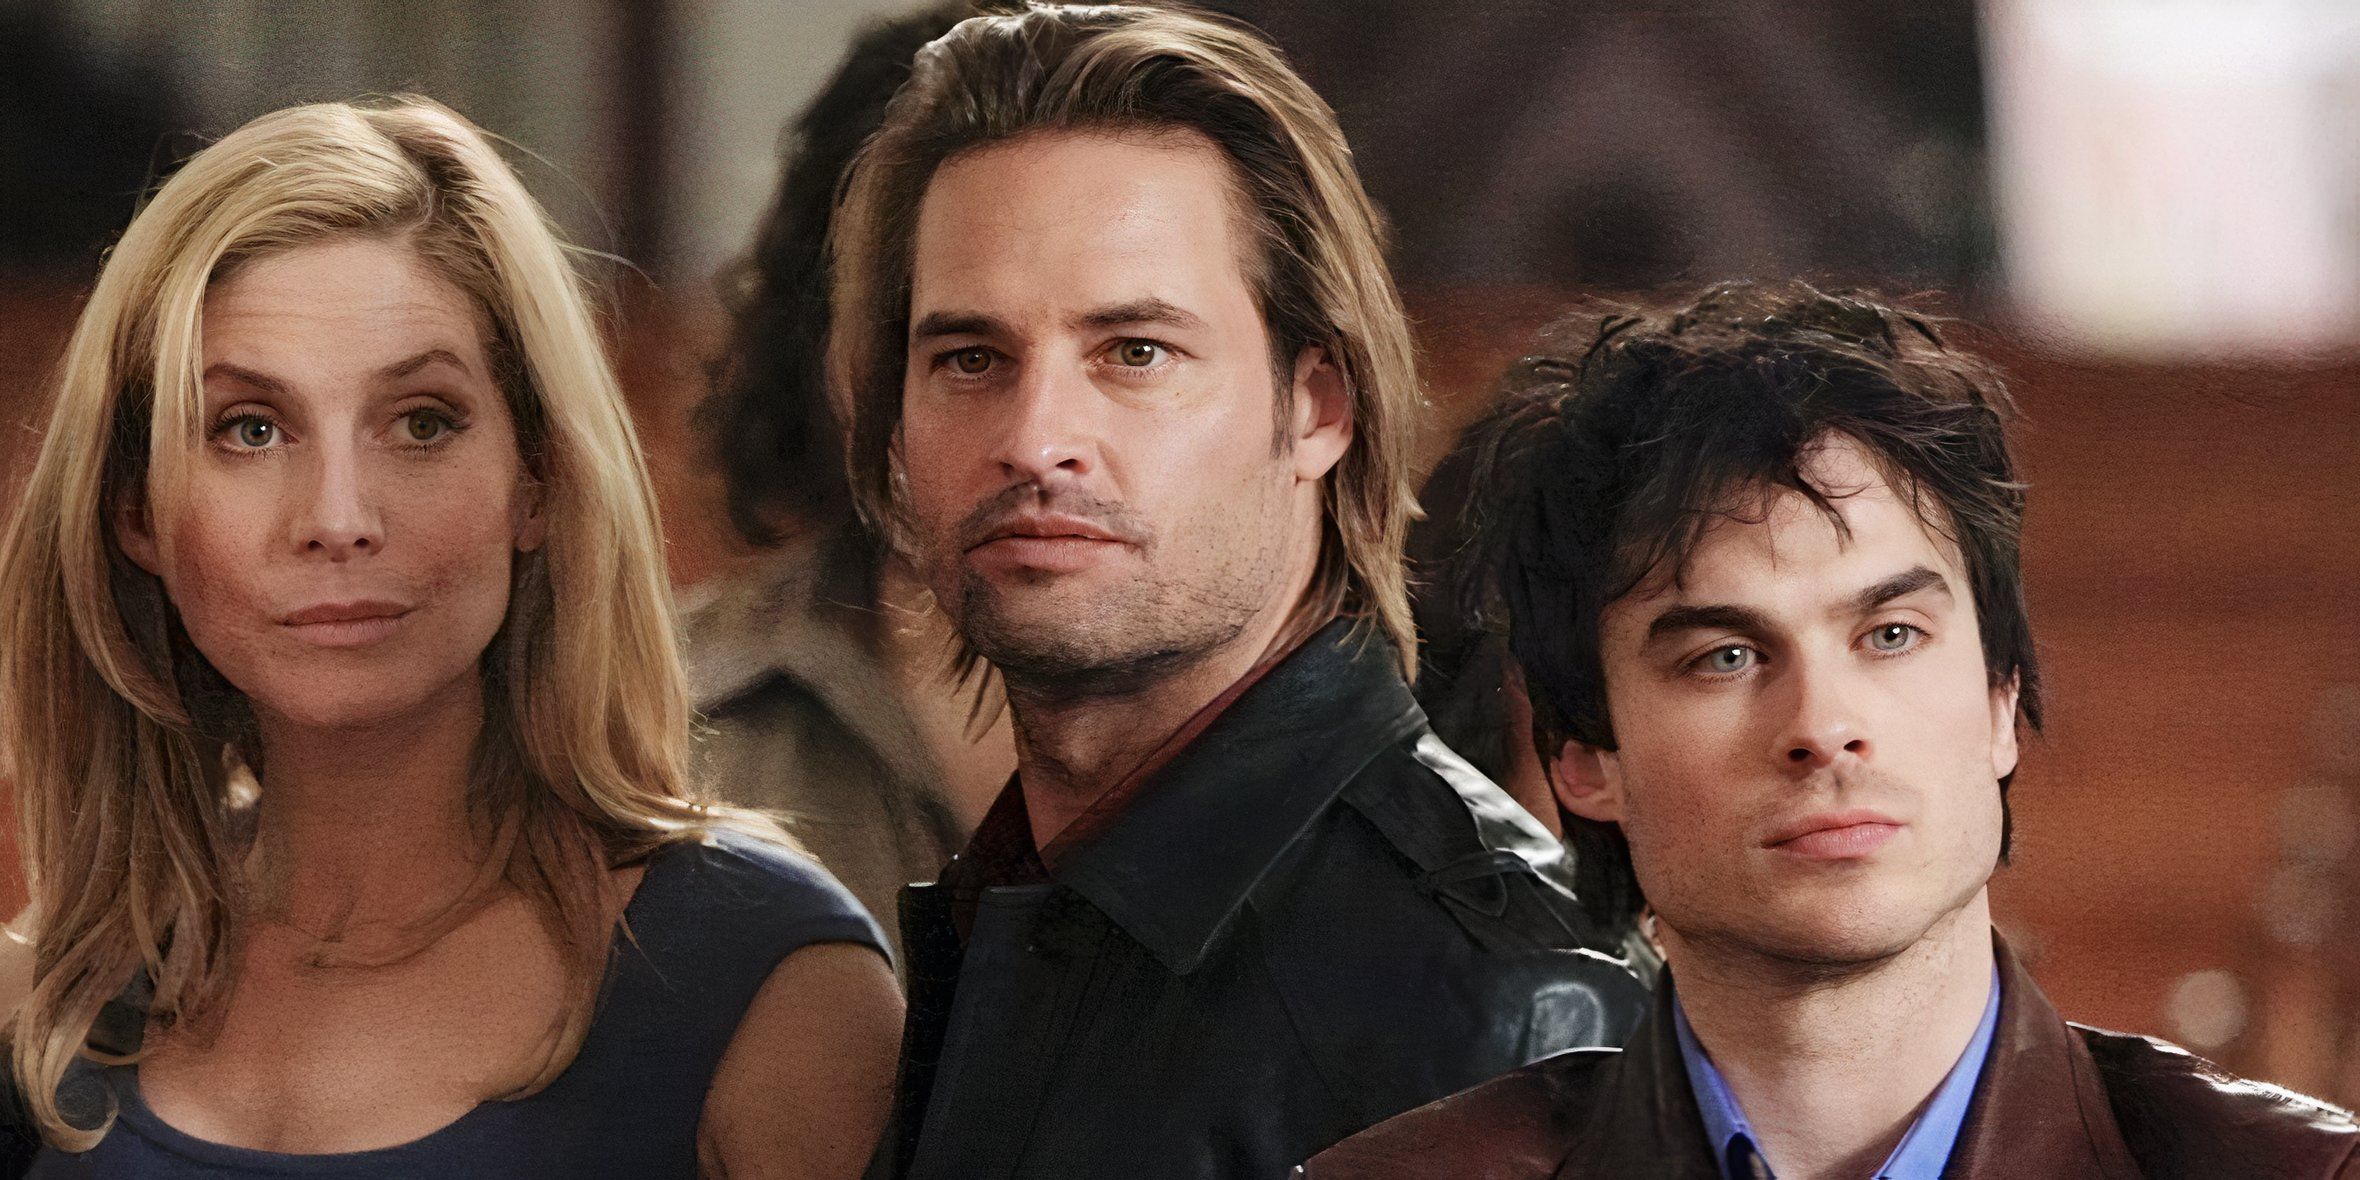 Juliet, Sawyer e Boone na igreja juntos parecendo sérios no final da série Lost